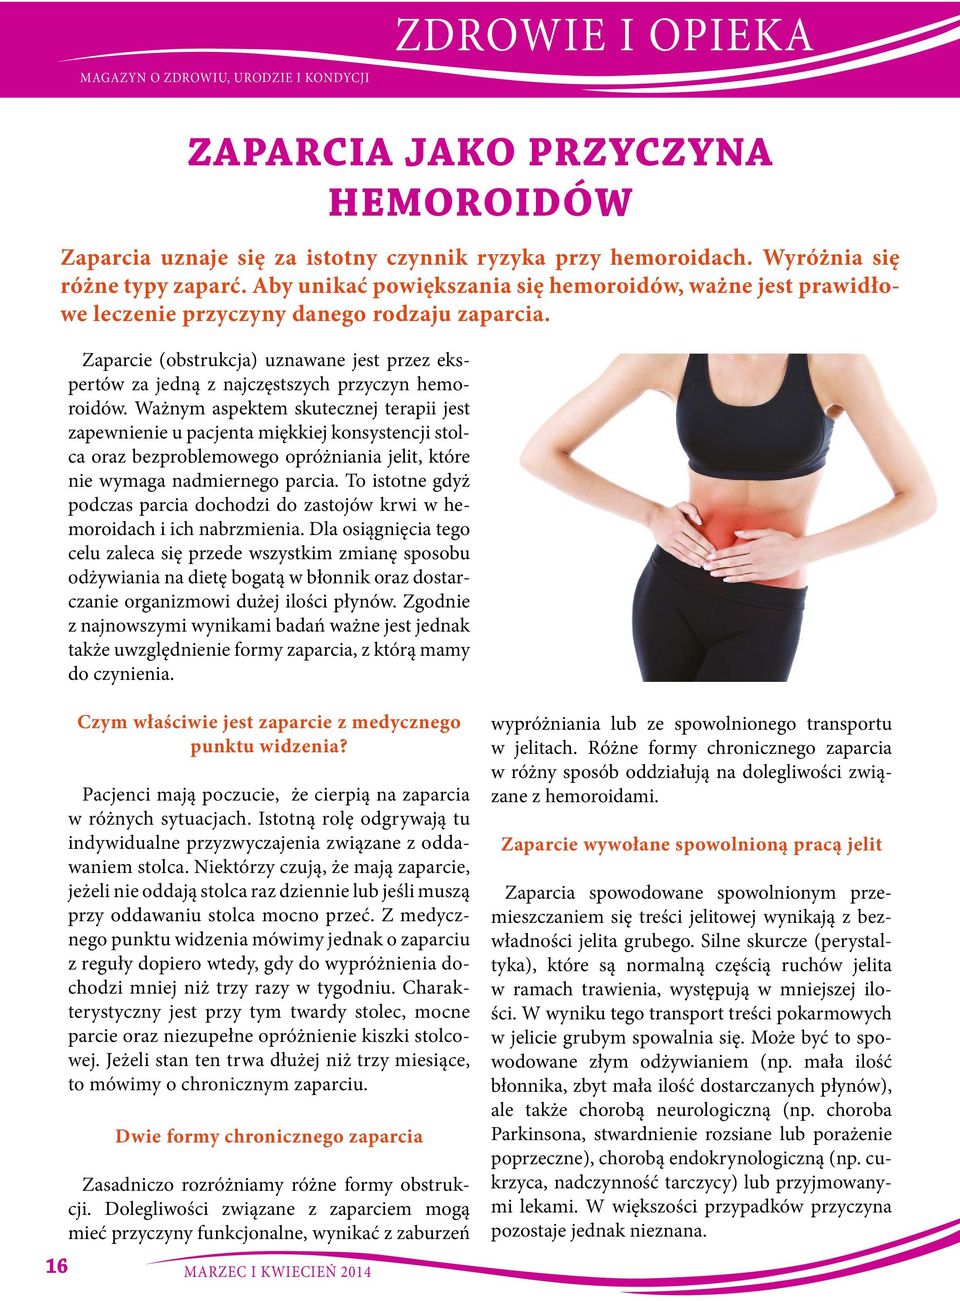 Zaparcie (obstrukcja) uznawane jest przez ekspertów za jedną z najczęstszych przyczyn hemoroidów.